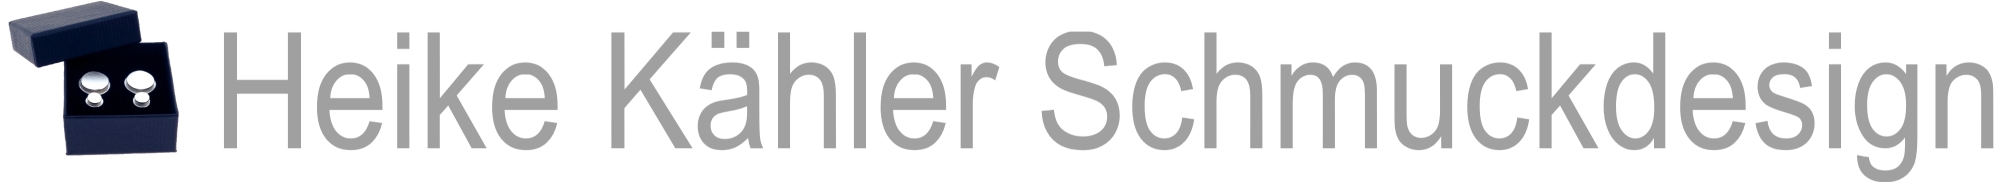 Heike Kähler Schmuckdesign-Logo